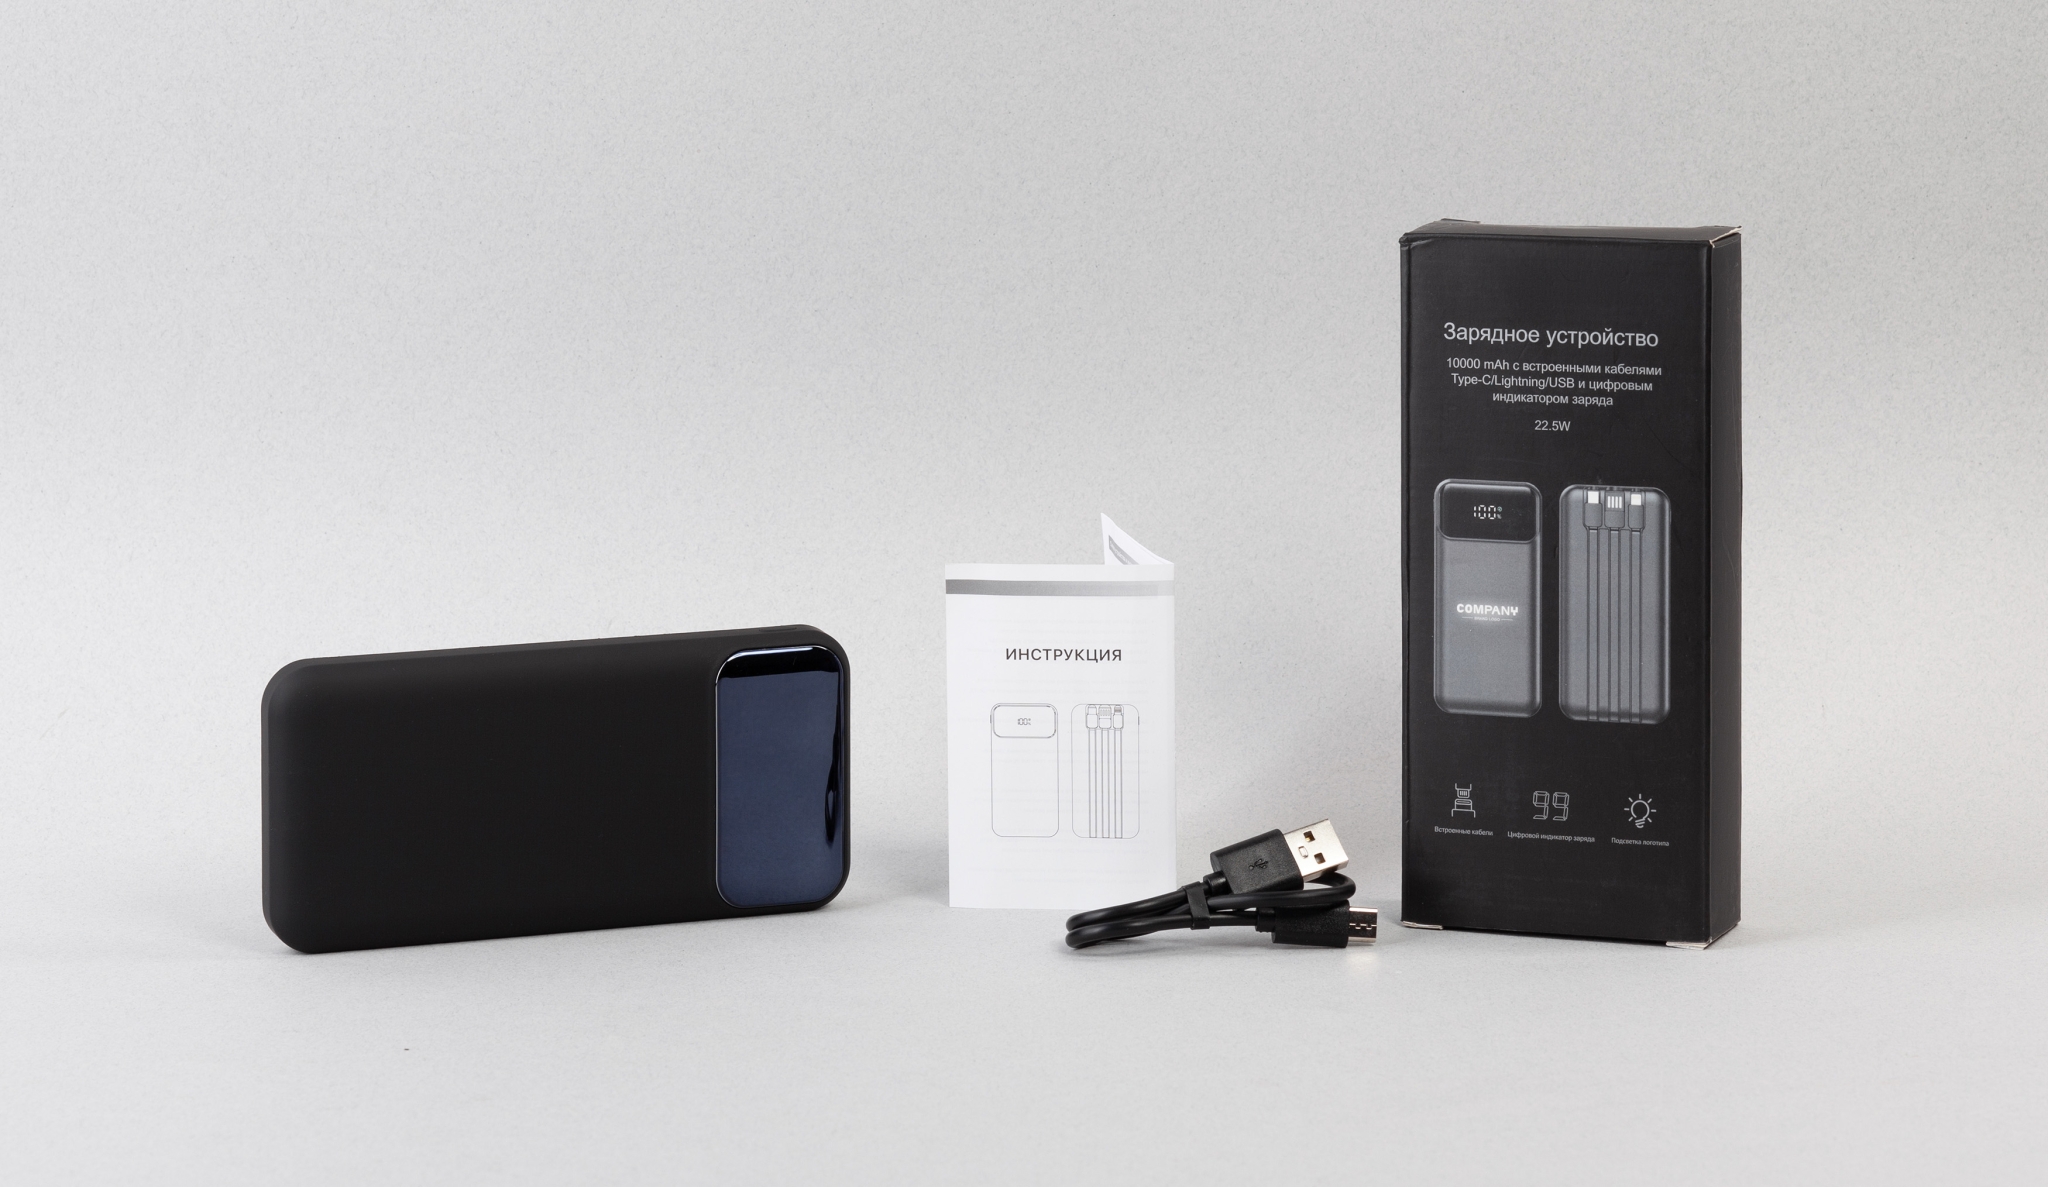 Зарядное (22.5W) устройство "Grade SOFTTOUCH" 10000 mAh с подсветкой логотипа, встроенными кабелями и цифровым индикатором заряда, черный, пластик